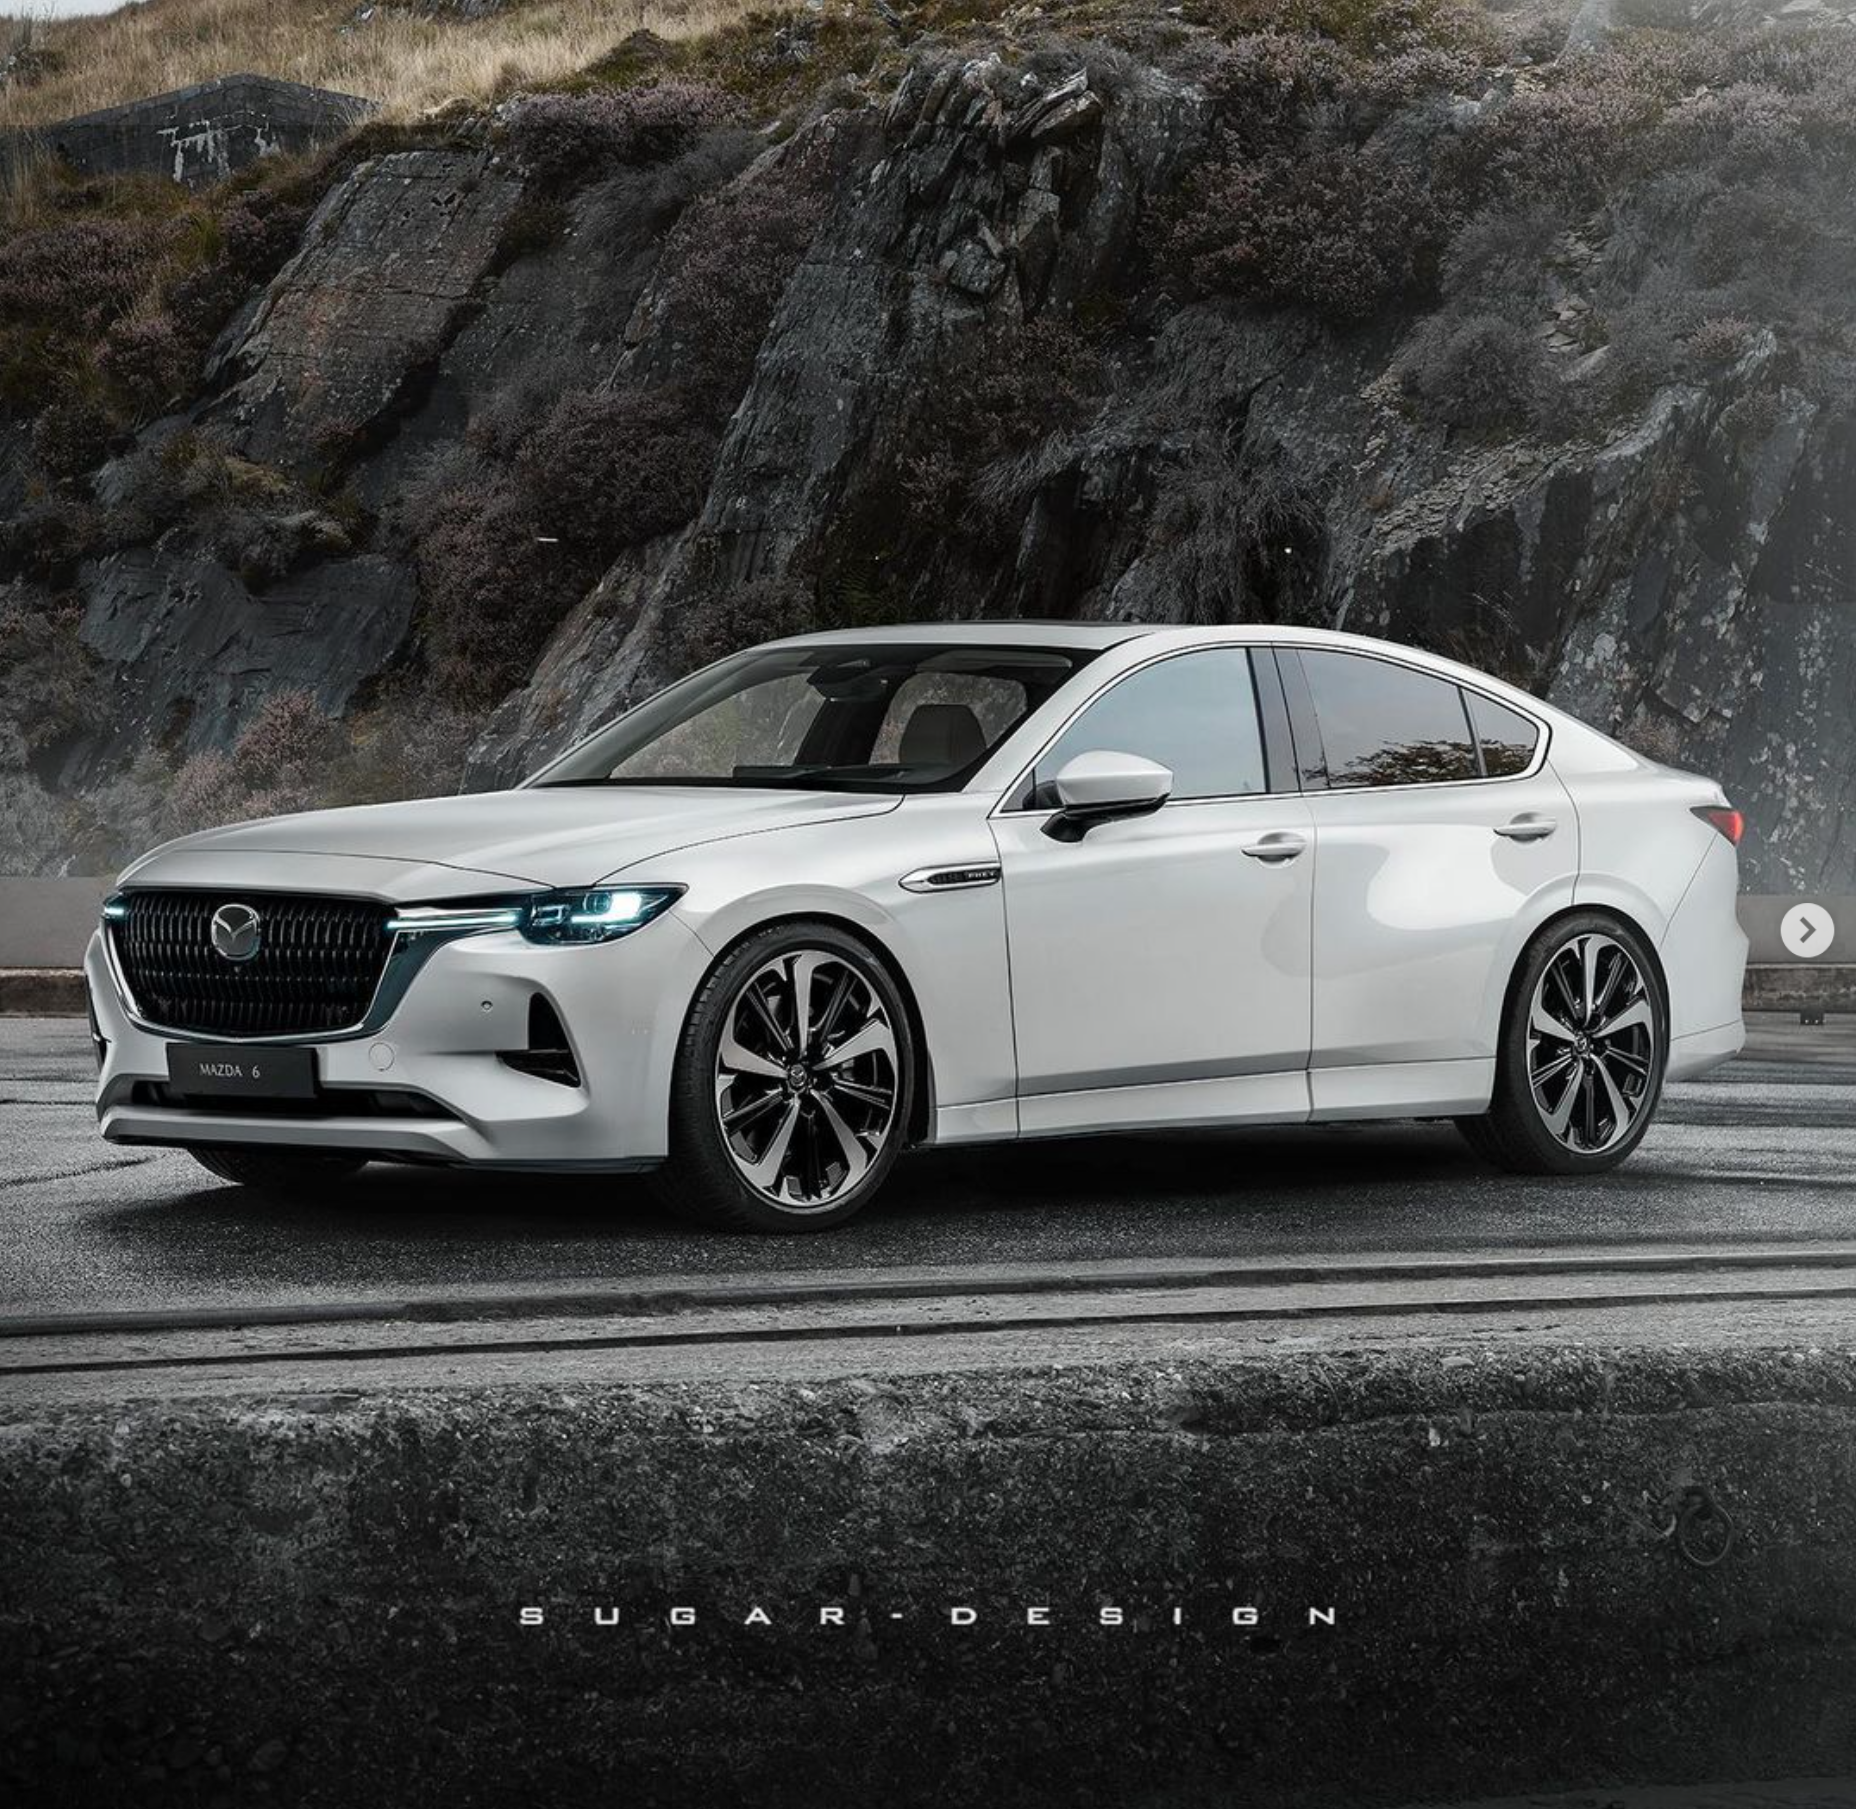 Chiêm ngưỡng chiếc xe Mazda 6 đời mới với những đường nét thời thượng và phong cách. Với thiết kế đơn giản nhưng tinh tế, chiếc xe này sẽ khiến bạn cảm thấy phấn khích và muốn sở hữu ngay lập tức. Hãy cùng ngắm nhìn và đắm chìm trong tuyệt phẩm này.